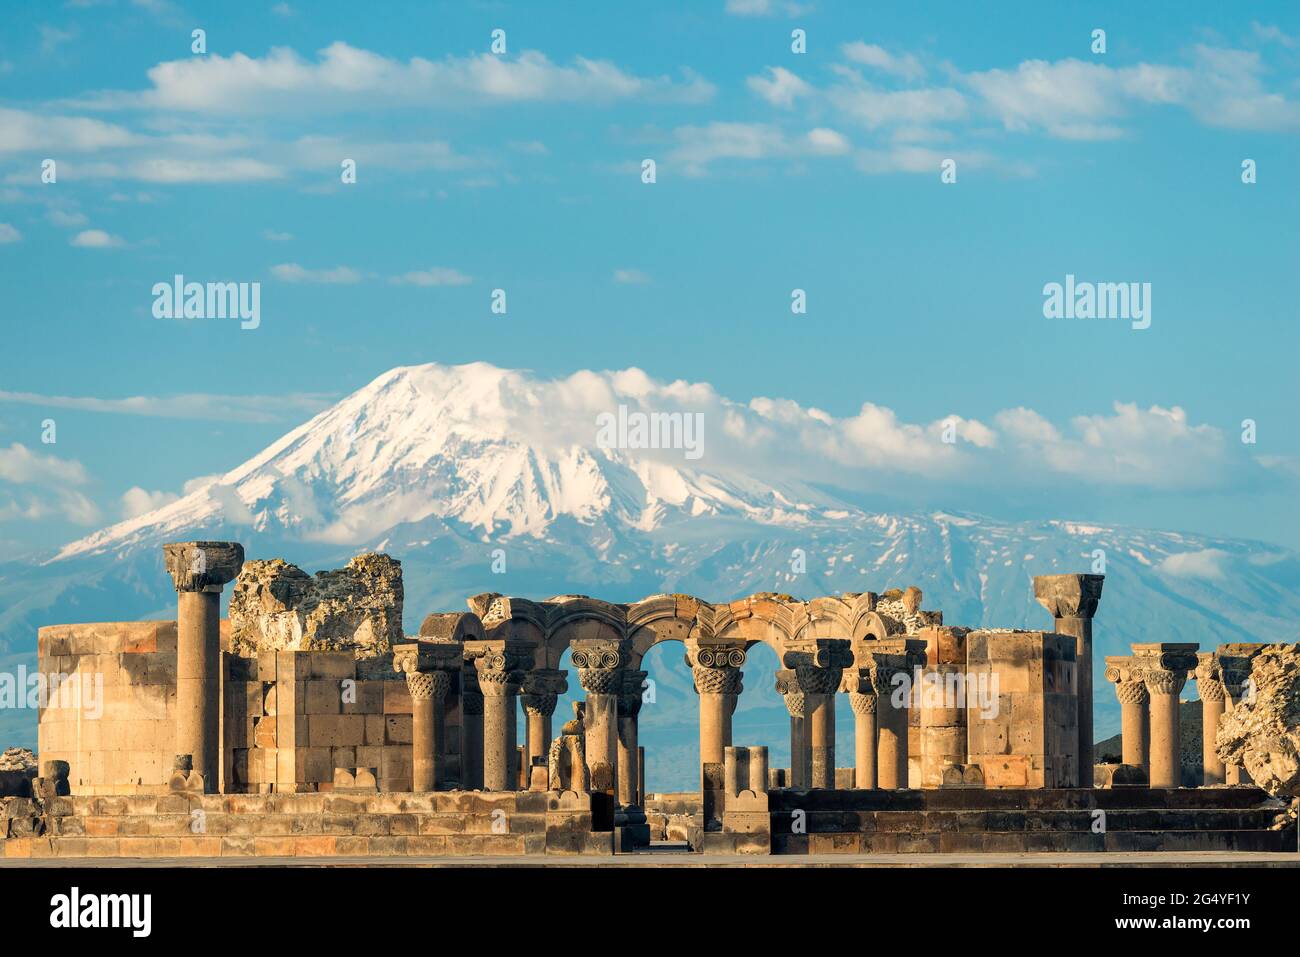 Vista del Templo Zvartnots en el fondo del Monte Ararat - una atracción turística de Armenia Foto de stock